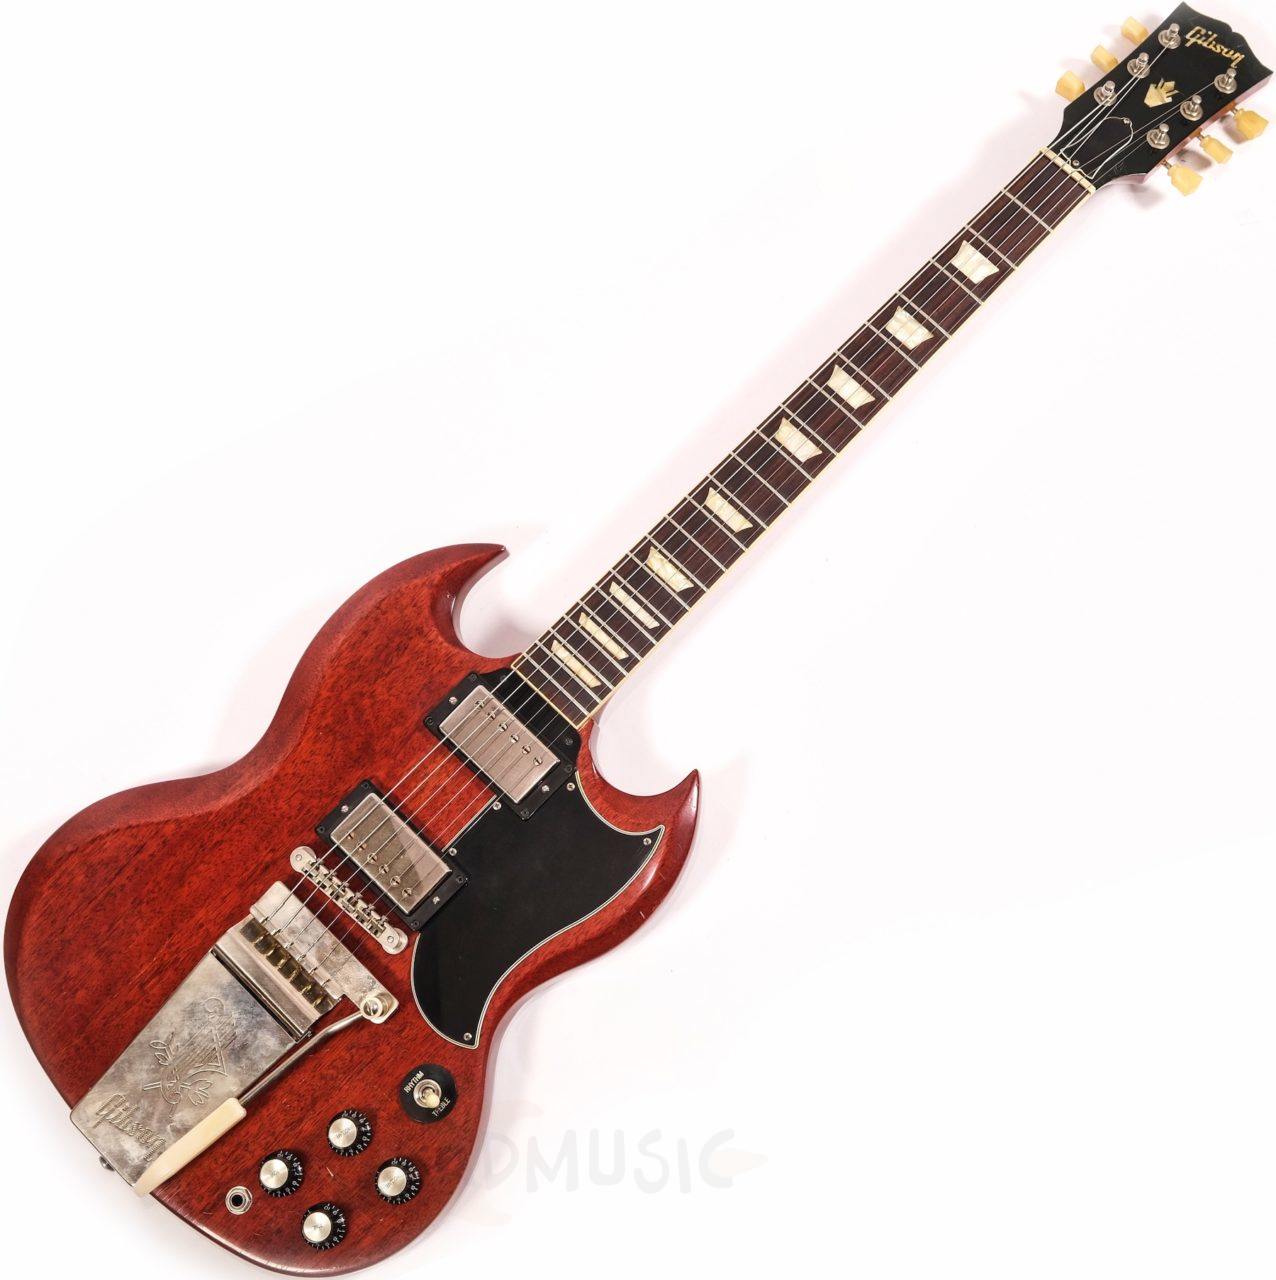 2019 Gibson SG Standard 61 Vibrola Relic